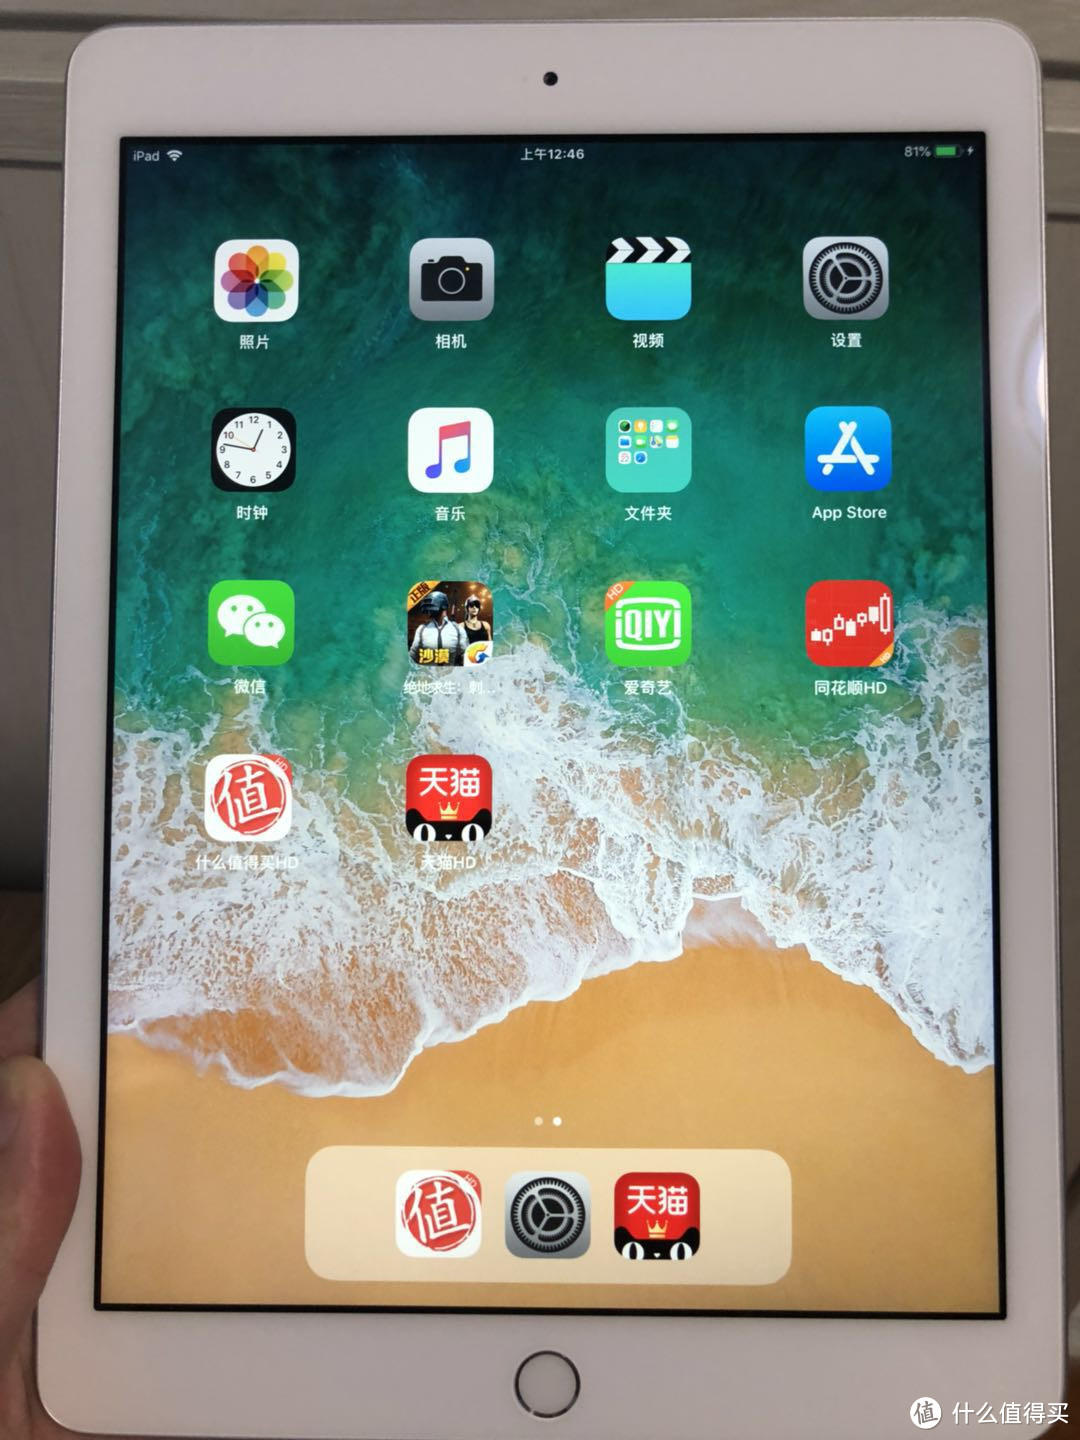 #原创新人#APPLE 苹果 2018 iPad 9.7寸 平板电脑购买&使用心得